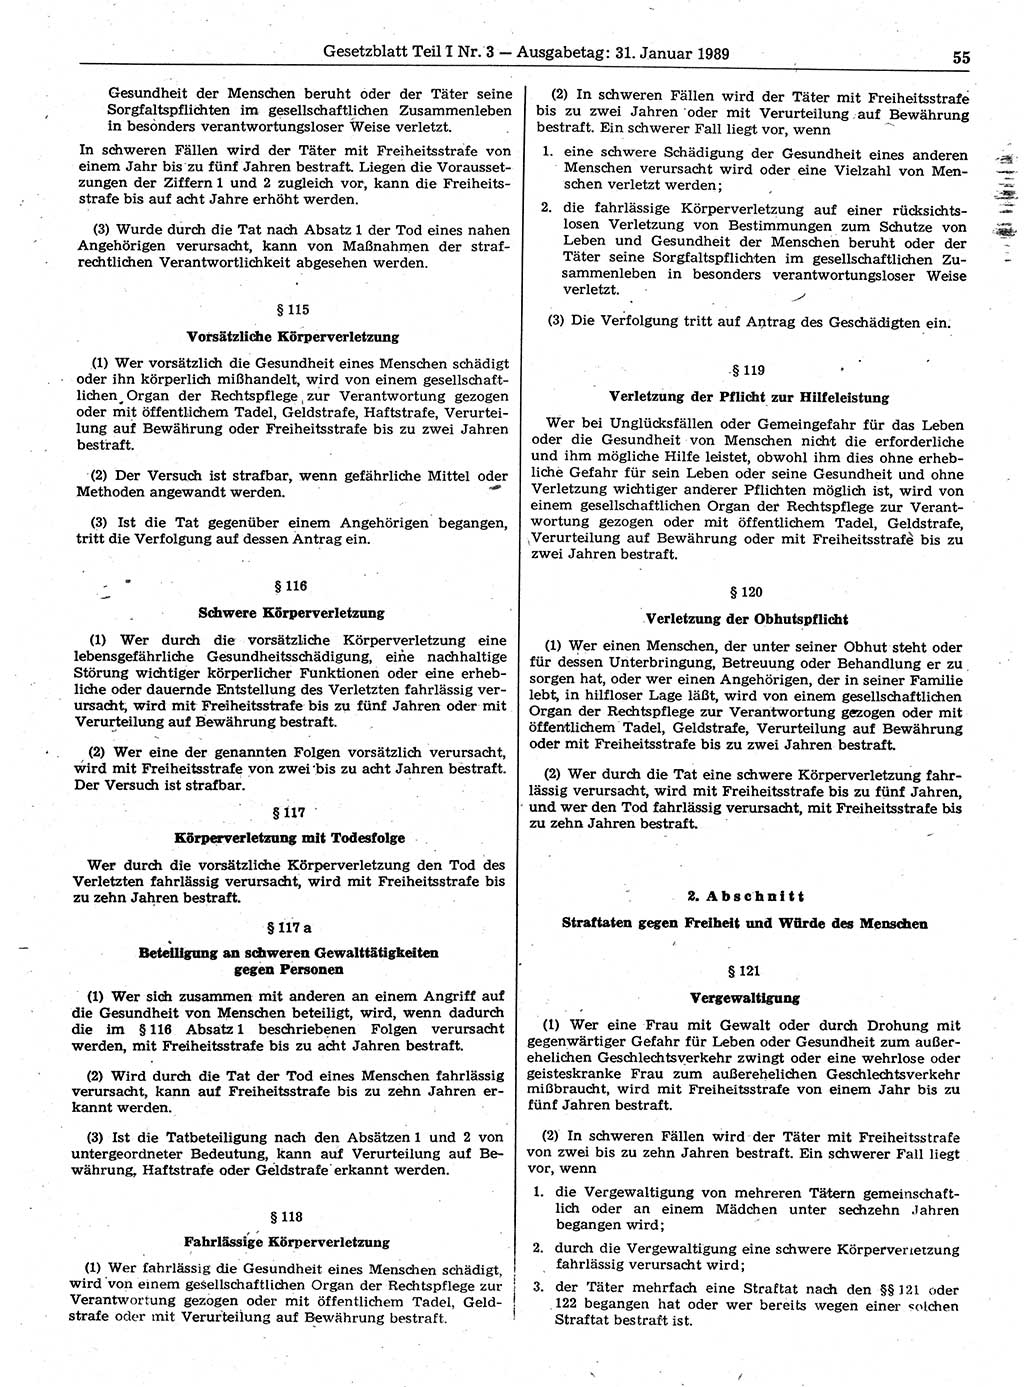 Gesetzblatt (GBl.) der Deutschen Demokratischen Republik (DDR) Teil Ⅰ 1989, Seite 55 (GBl. DDR Ⅰ 1989, S. 55)